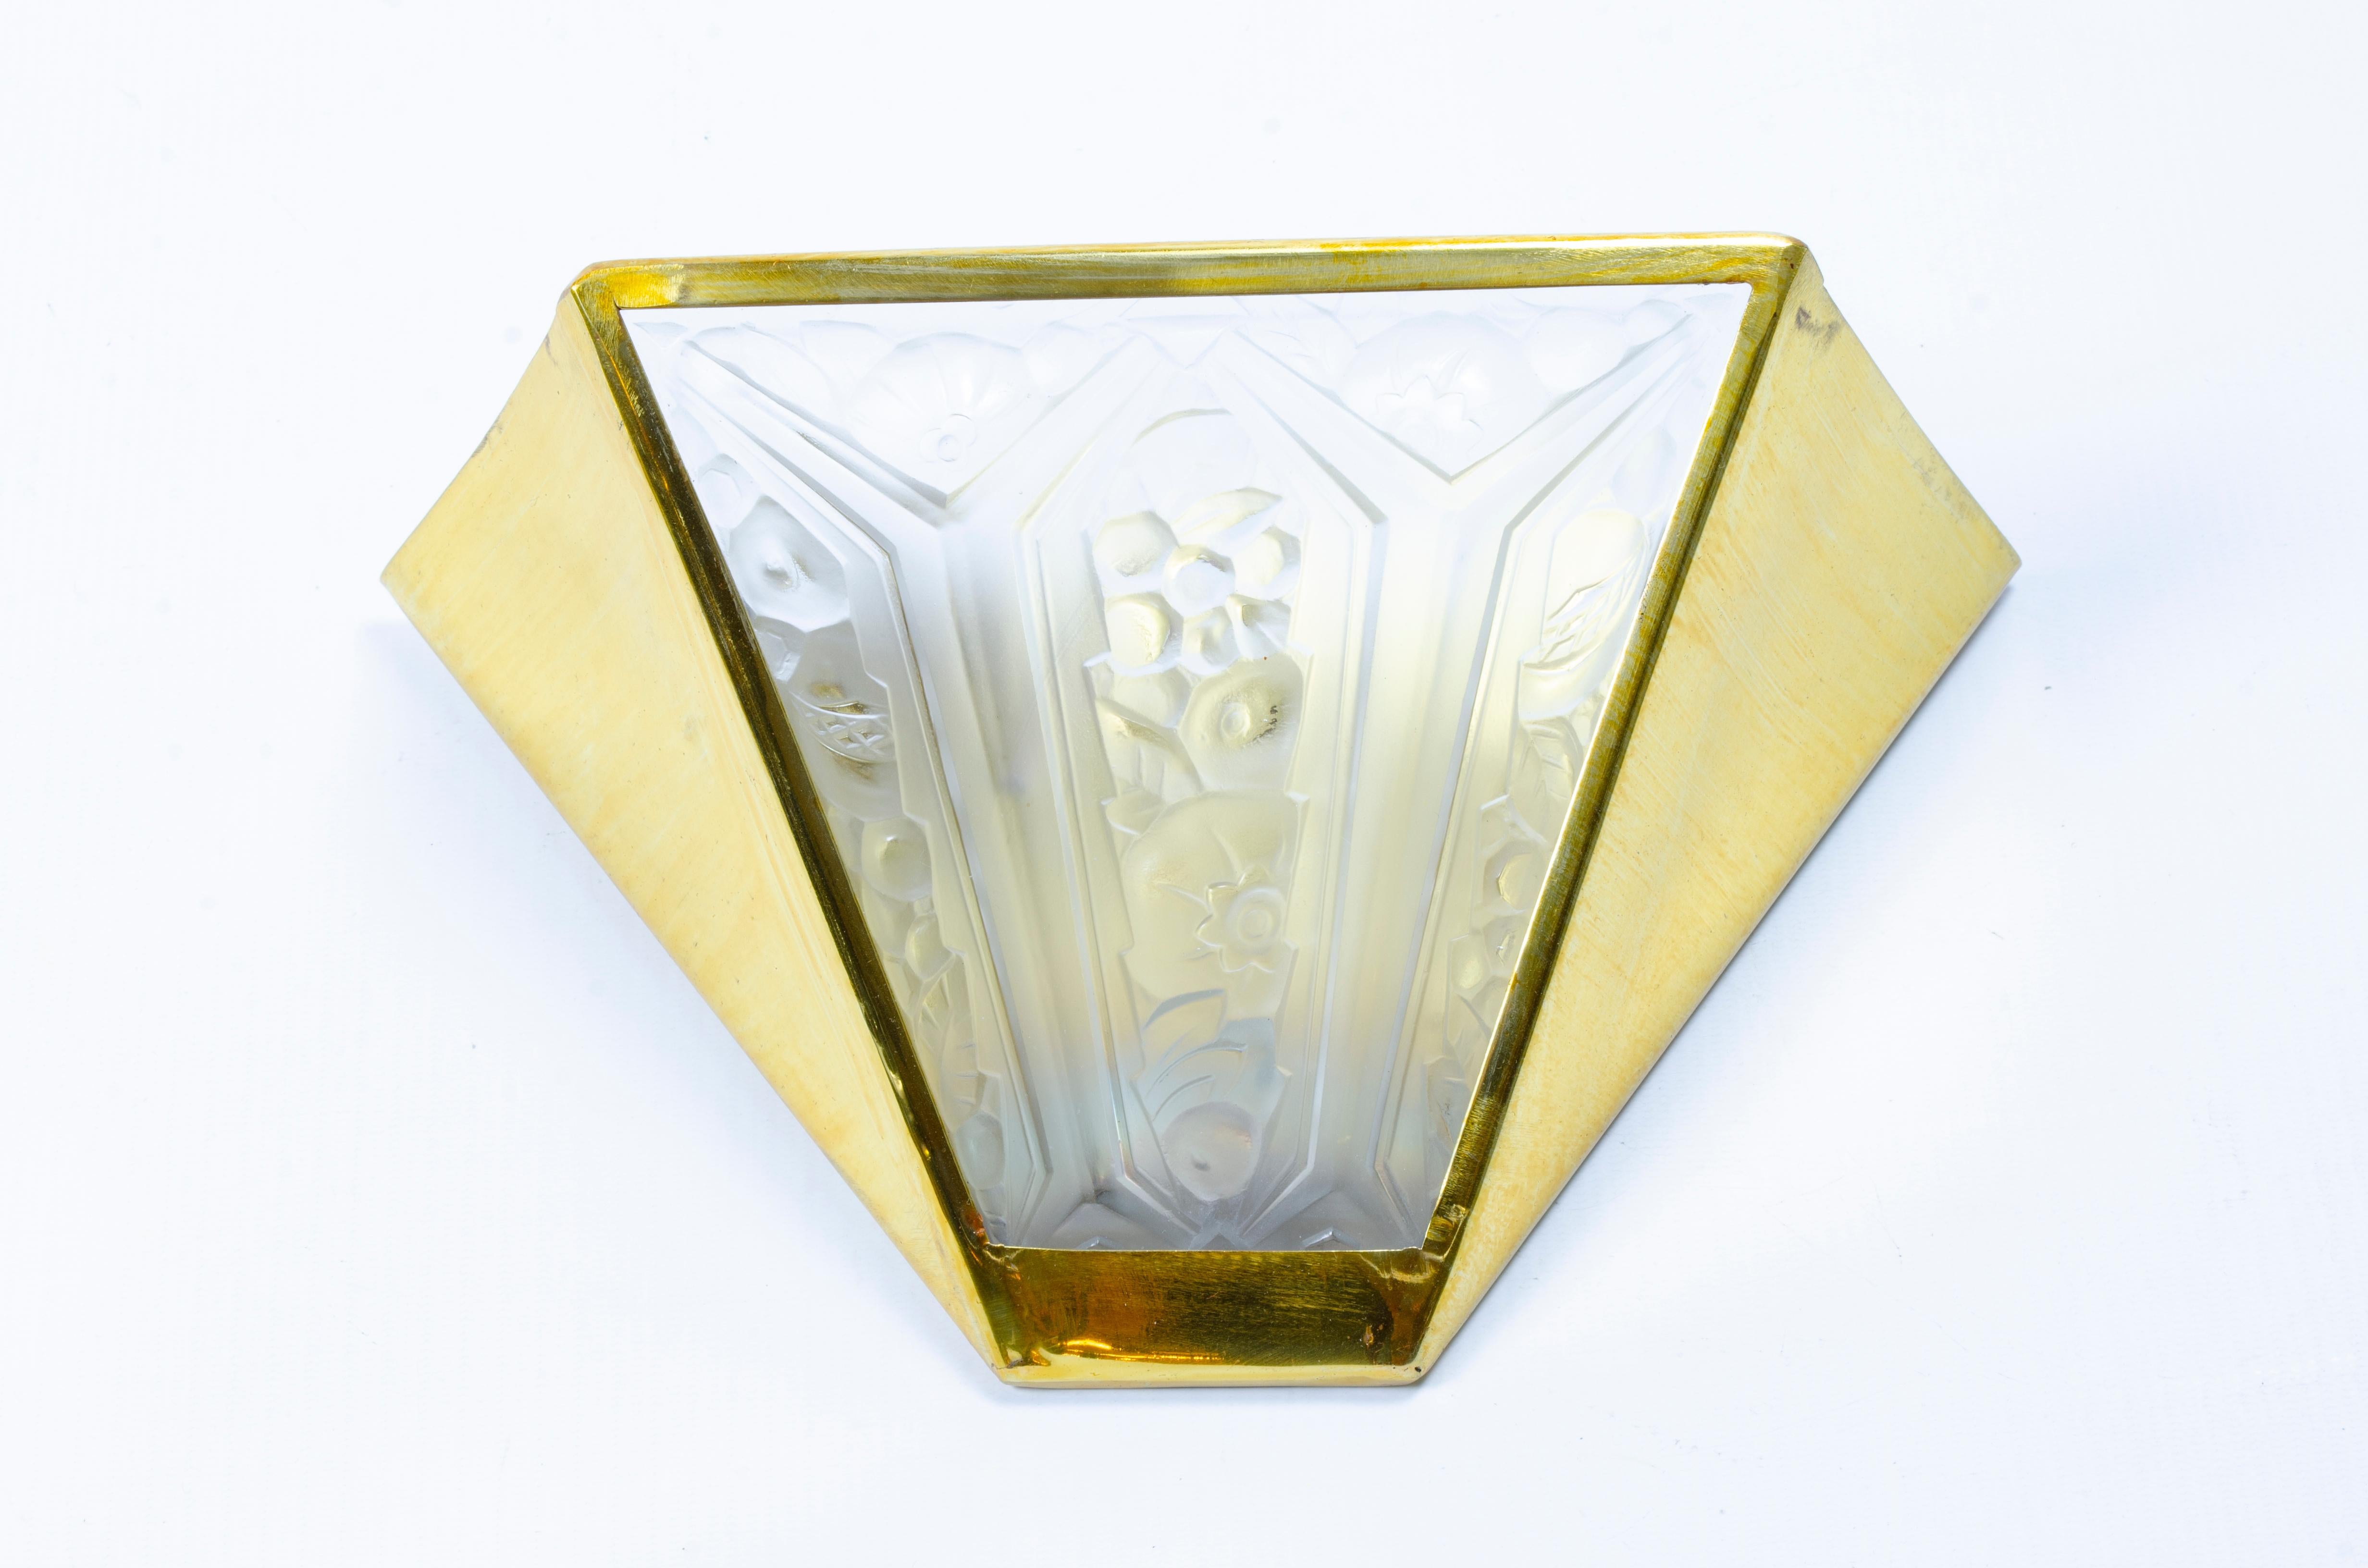 Paire d'appliques Art Déco, en bronze et plaques de verre satiné modèle fleur, par la verrerie Hanots (1925-1946).

France, CIRCA 1930.